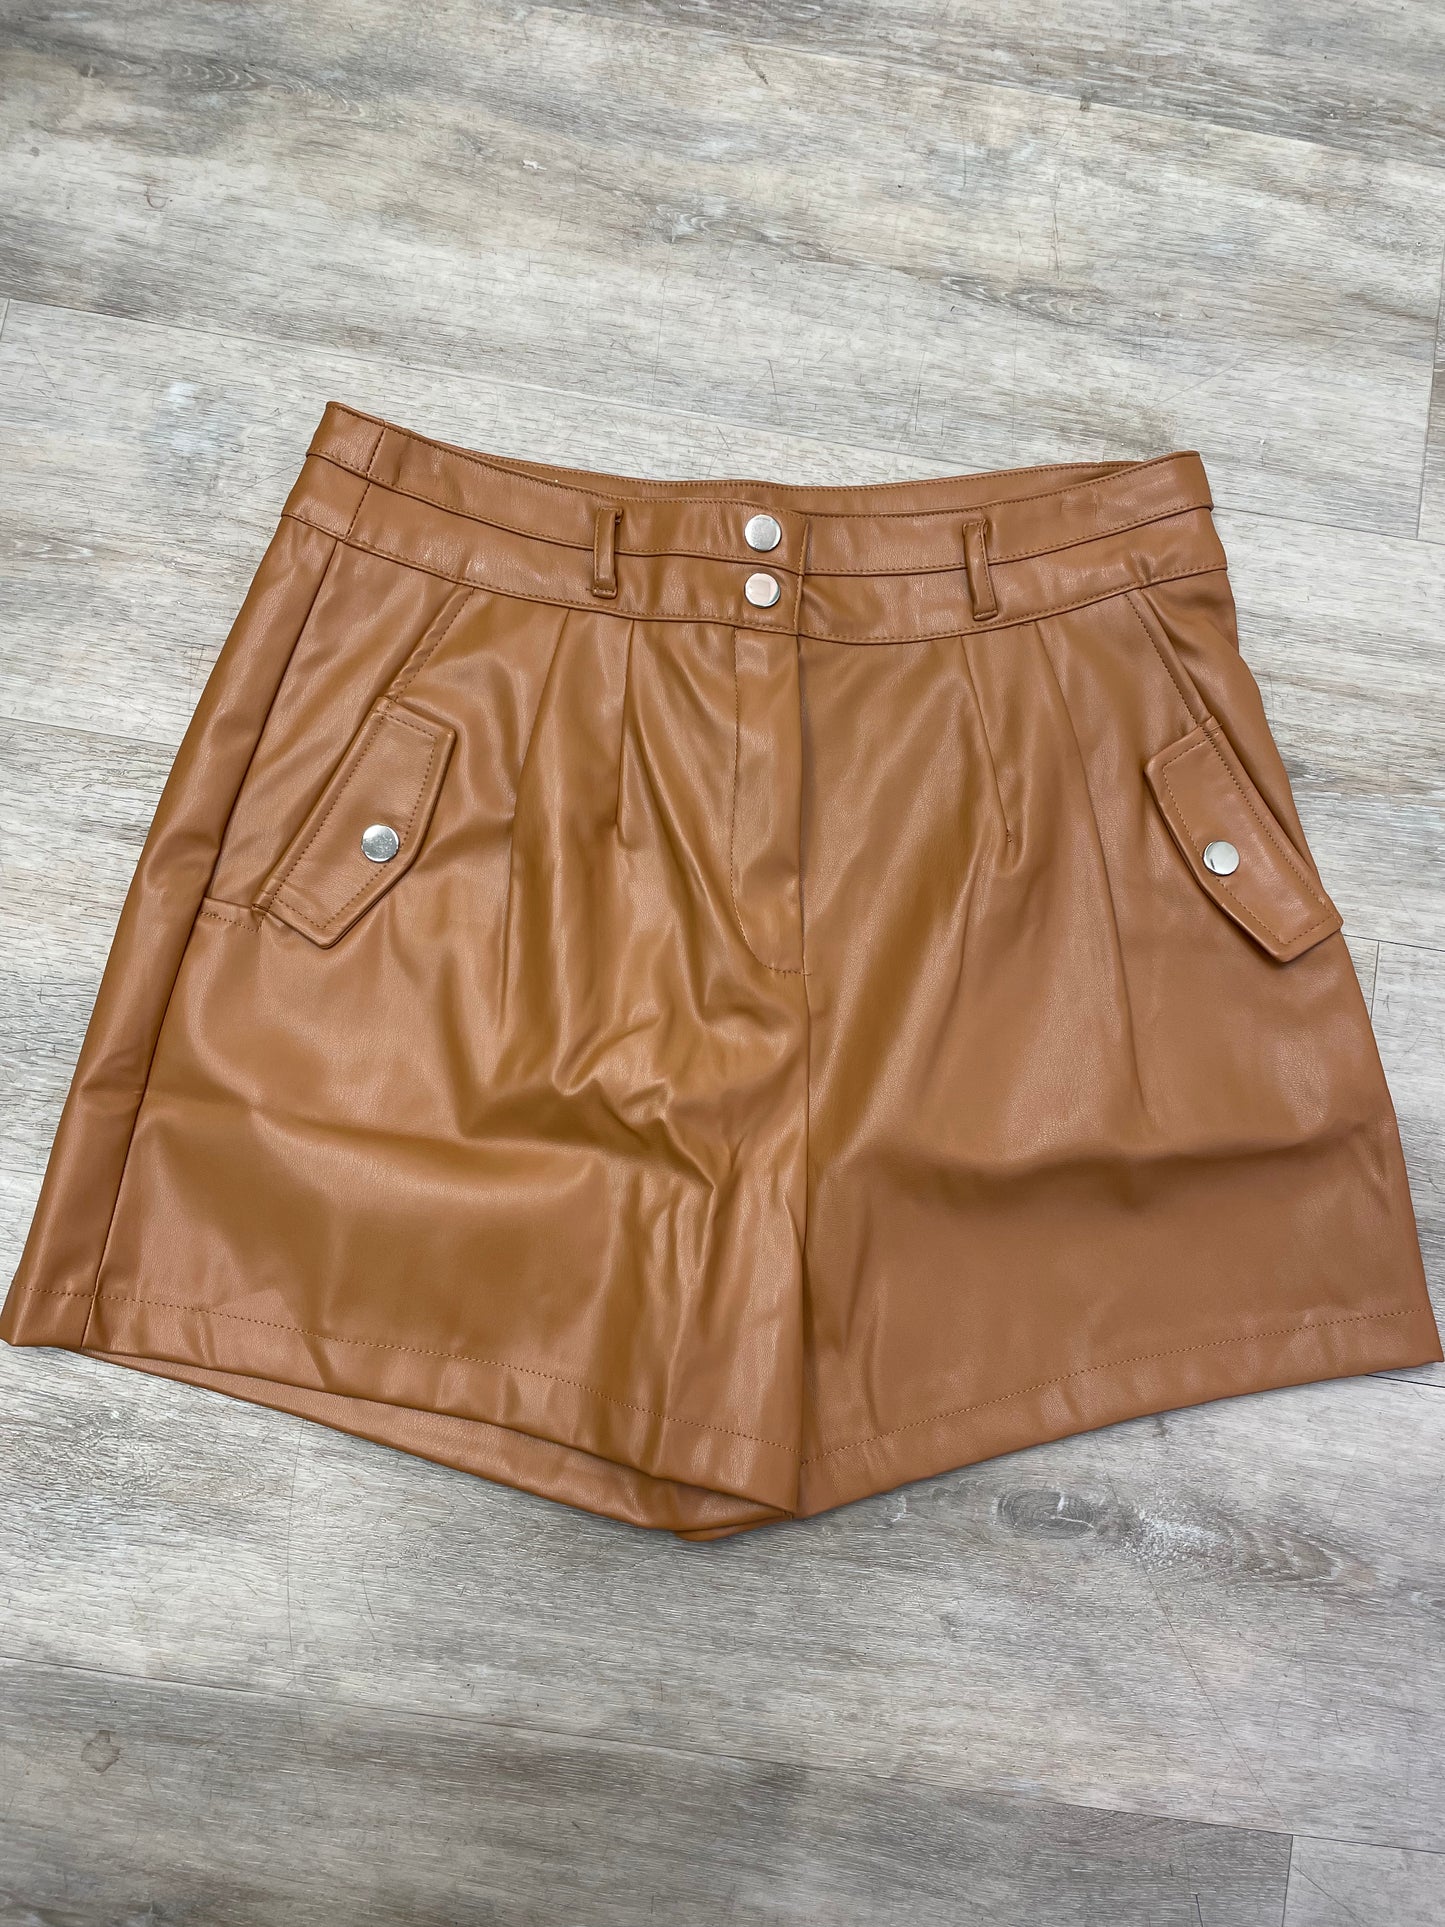 Camel Leather Shorts